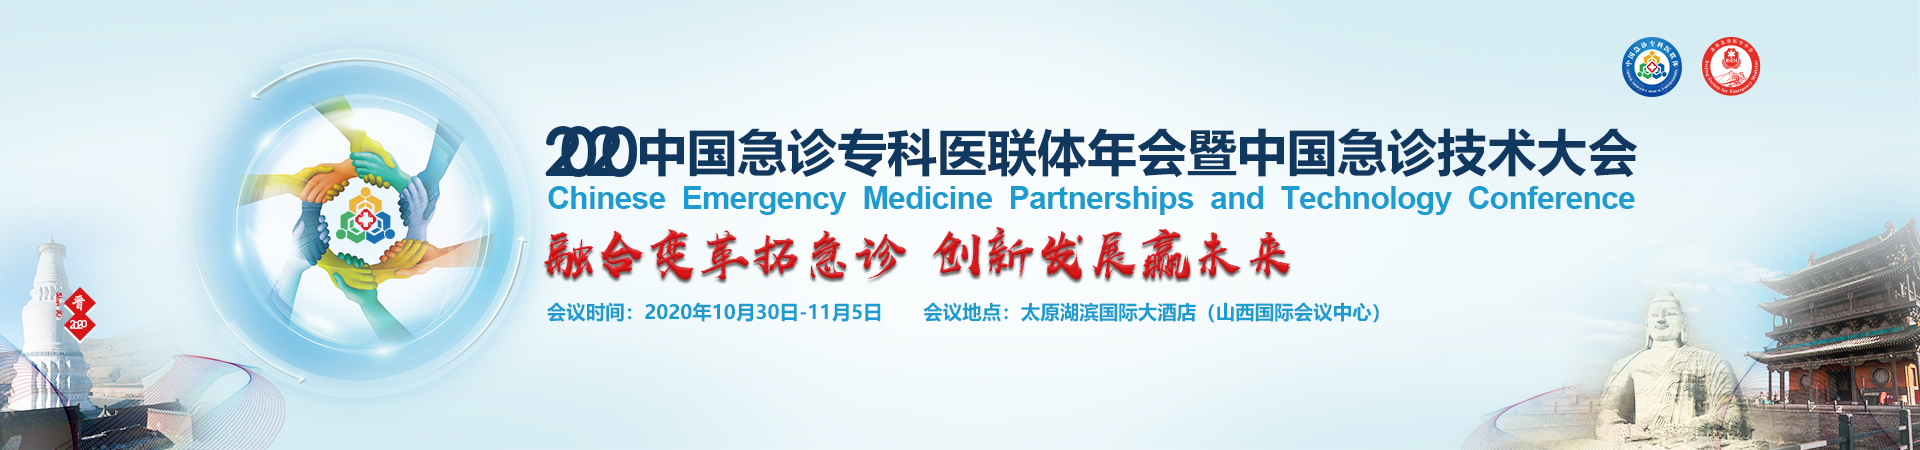 中国急诊专科医联体年会暨中国急诊技术大会